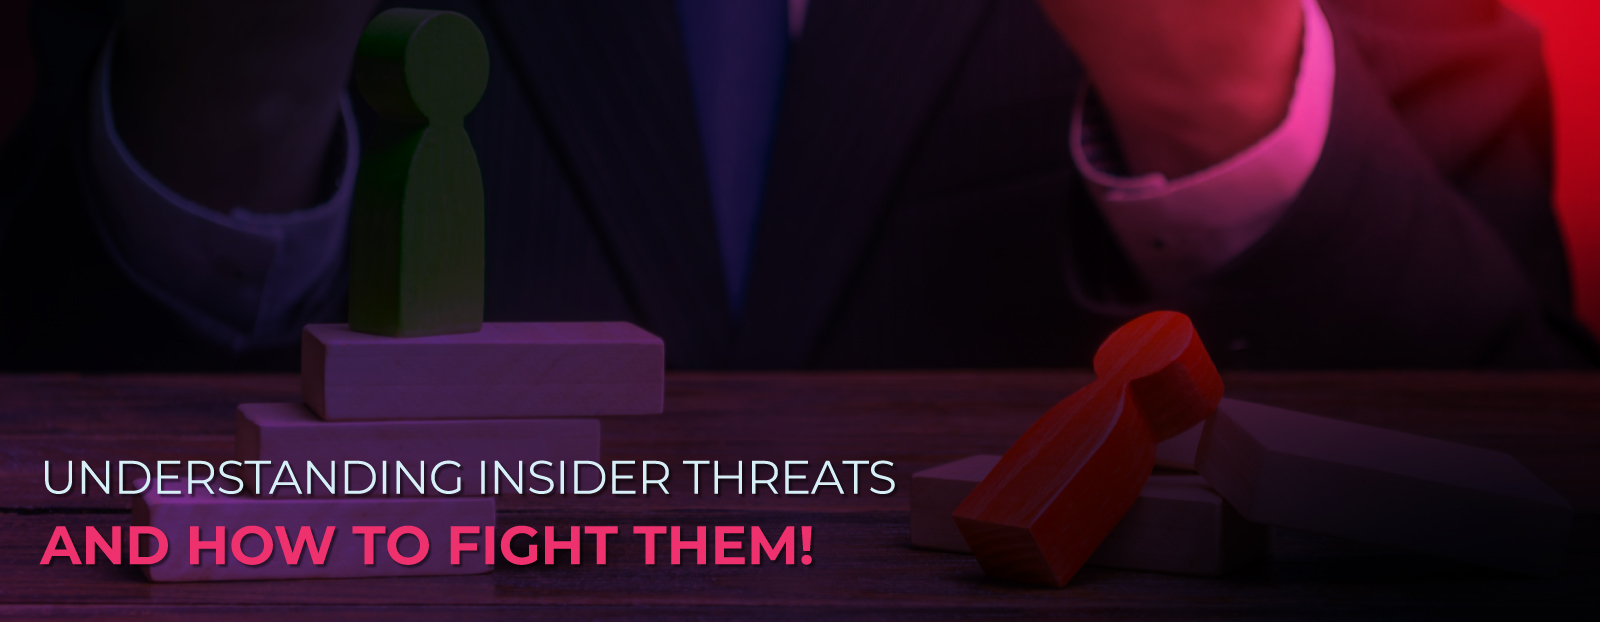 insider-threats